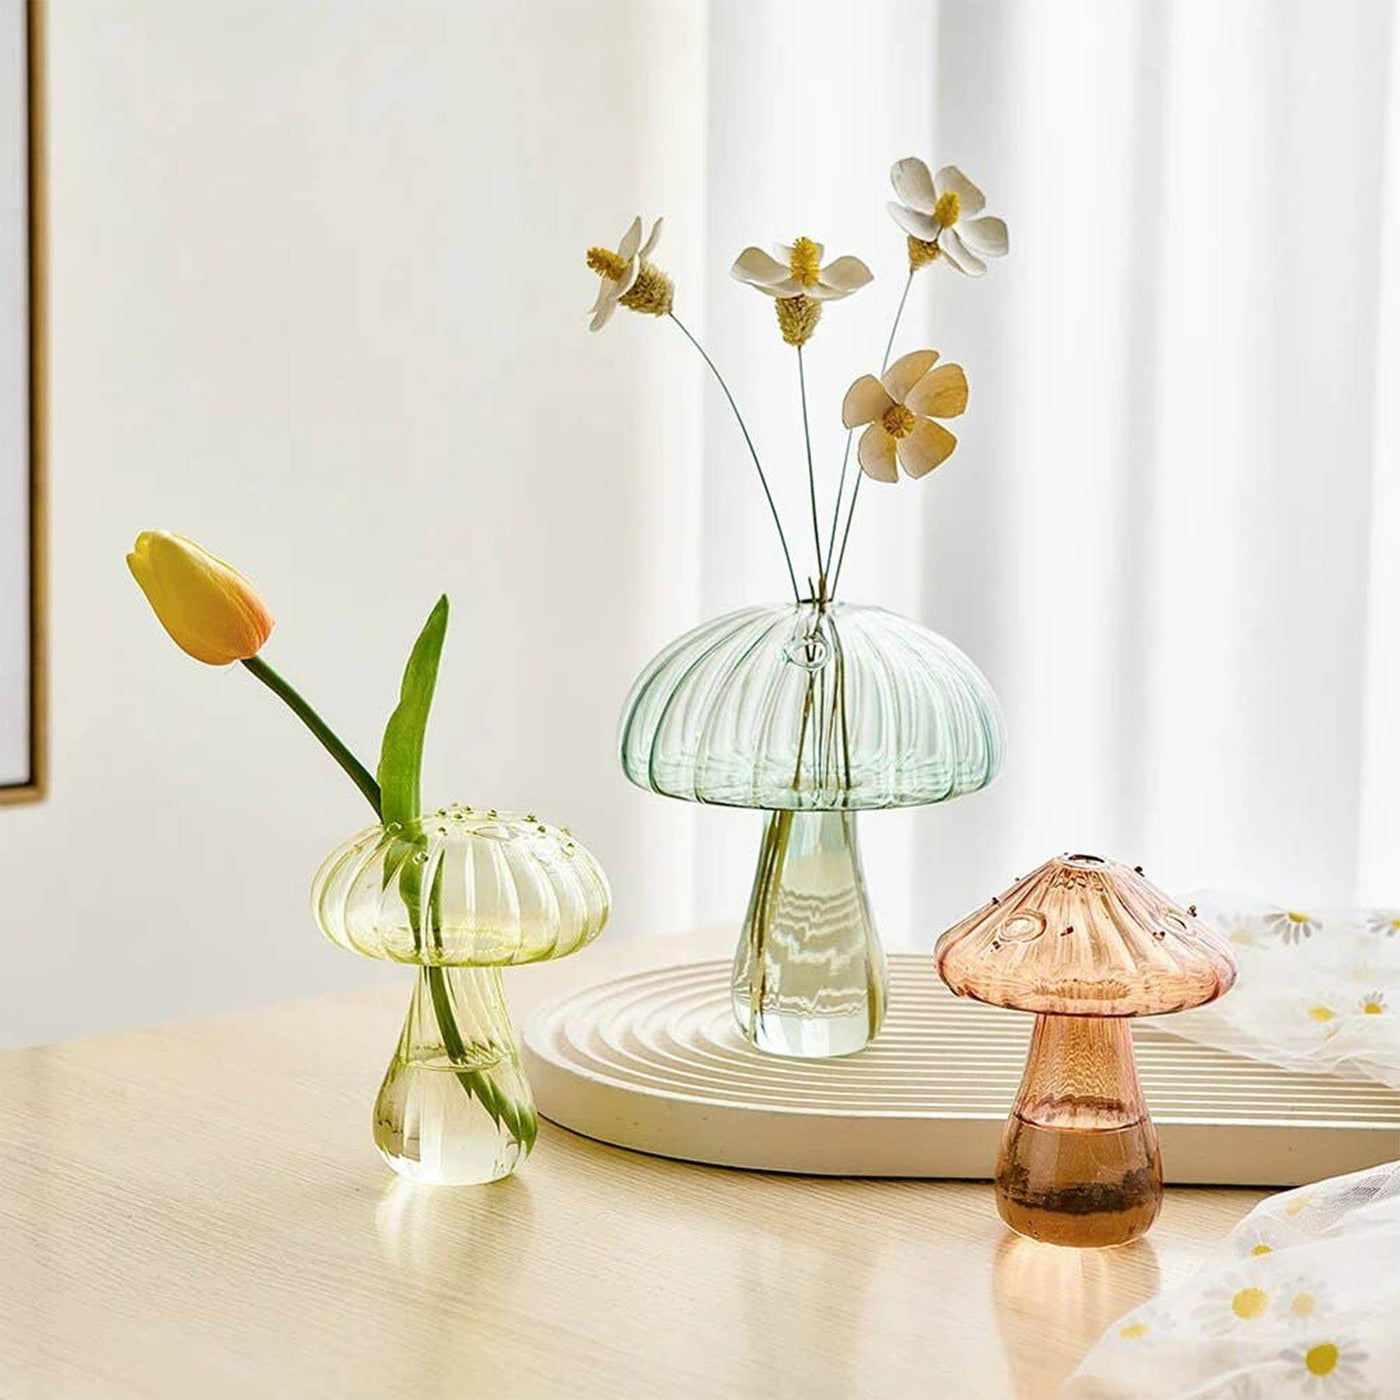 Trransformez votre espace avec les vases Champignon en verre de Filtrum Home. Leur forme distinctive ajoute une touche de magie et d'originalité à votre décoration intérieure.